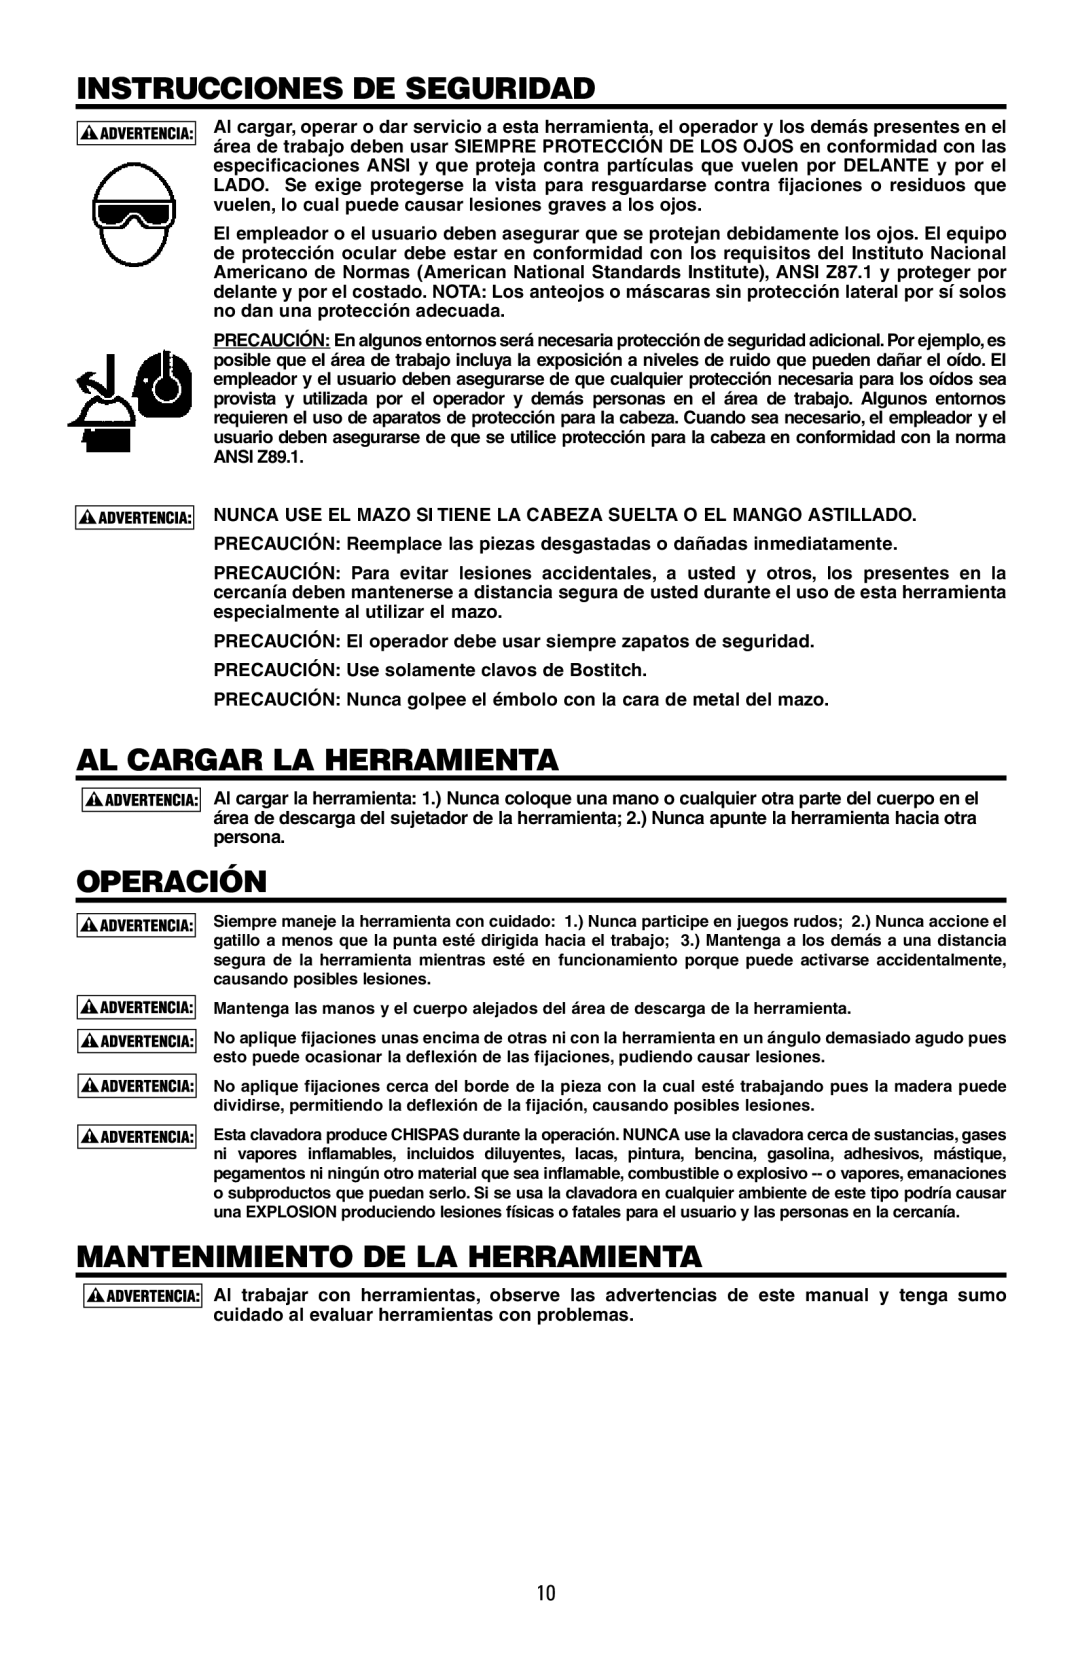 Intec MFN-200 manual Instrucciones De Seguridad, Al Cargar La Herramienta, Operación, Mantenimiento De La Herramienta 